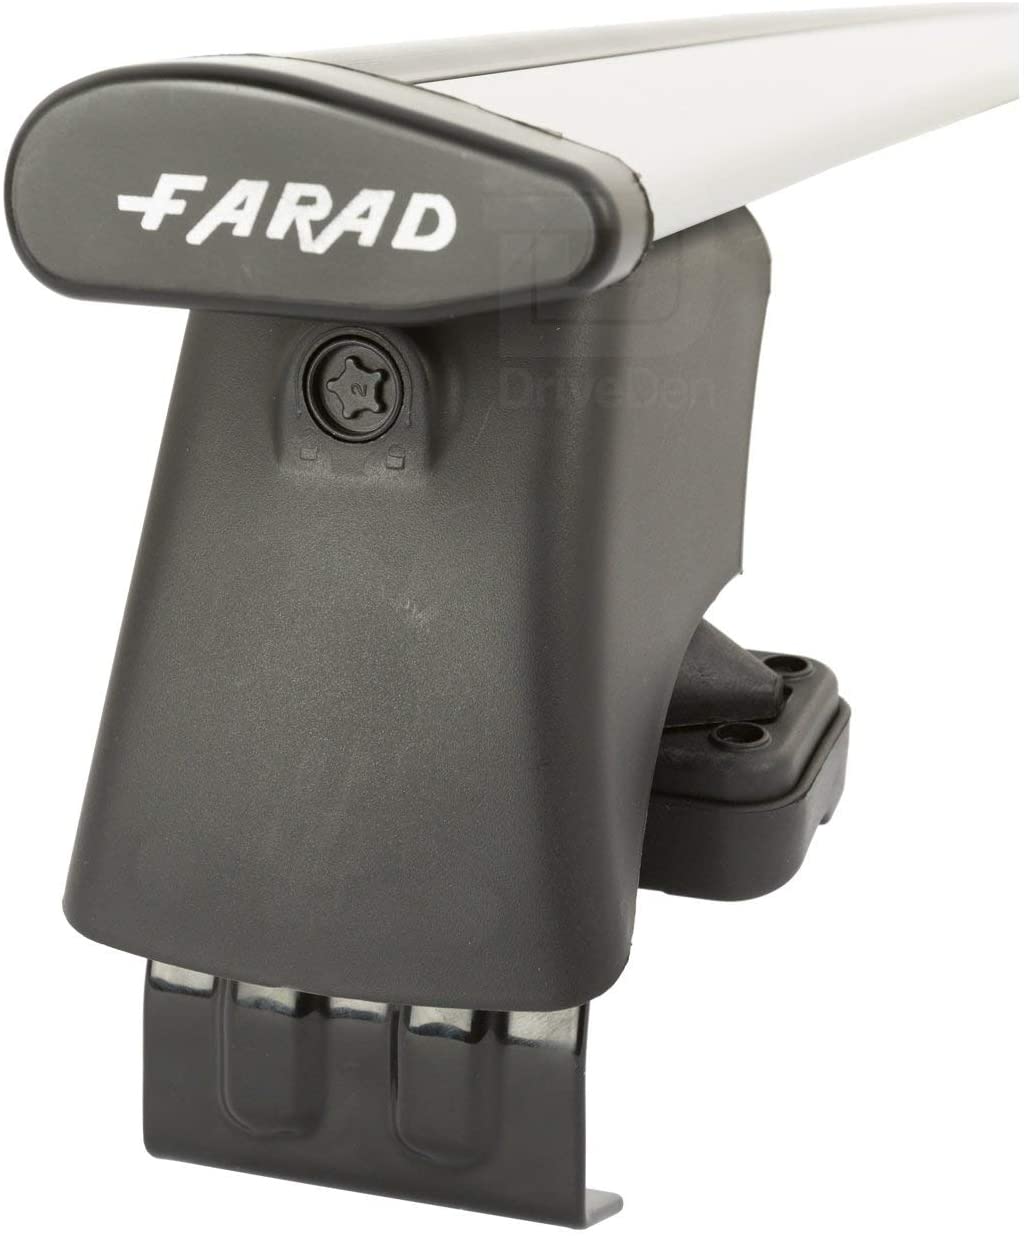 FARAD-Kit H2 per barre portatutto - Renault Scenic 2009-2016 (senza corrimano)